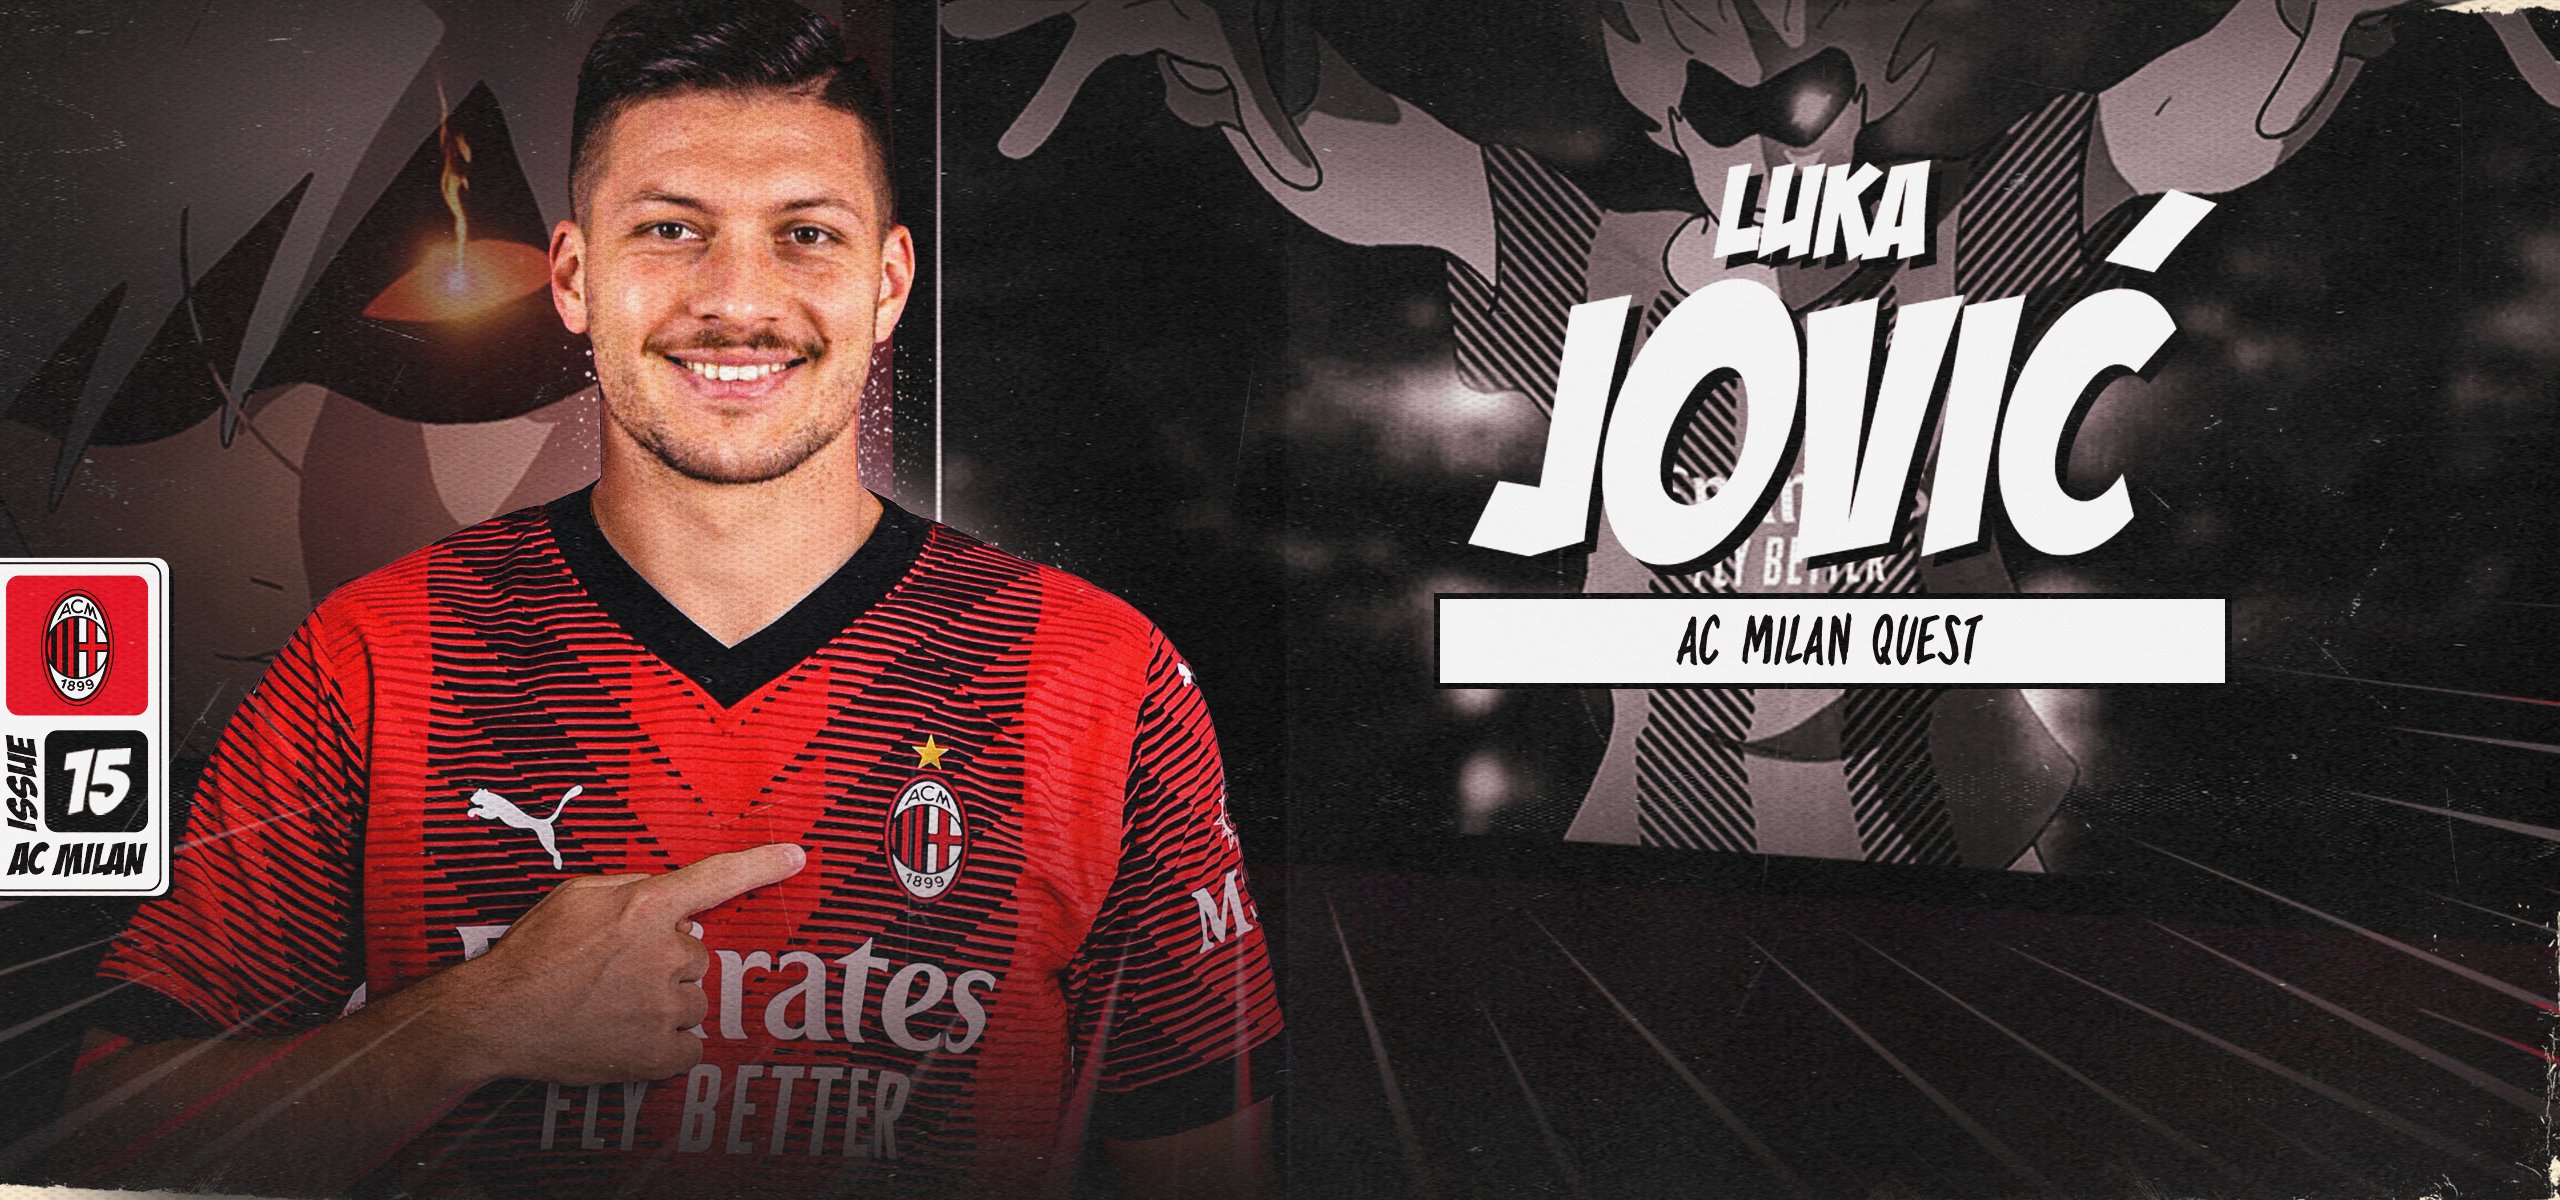 Luka Jovic AC Milan